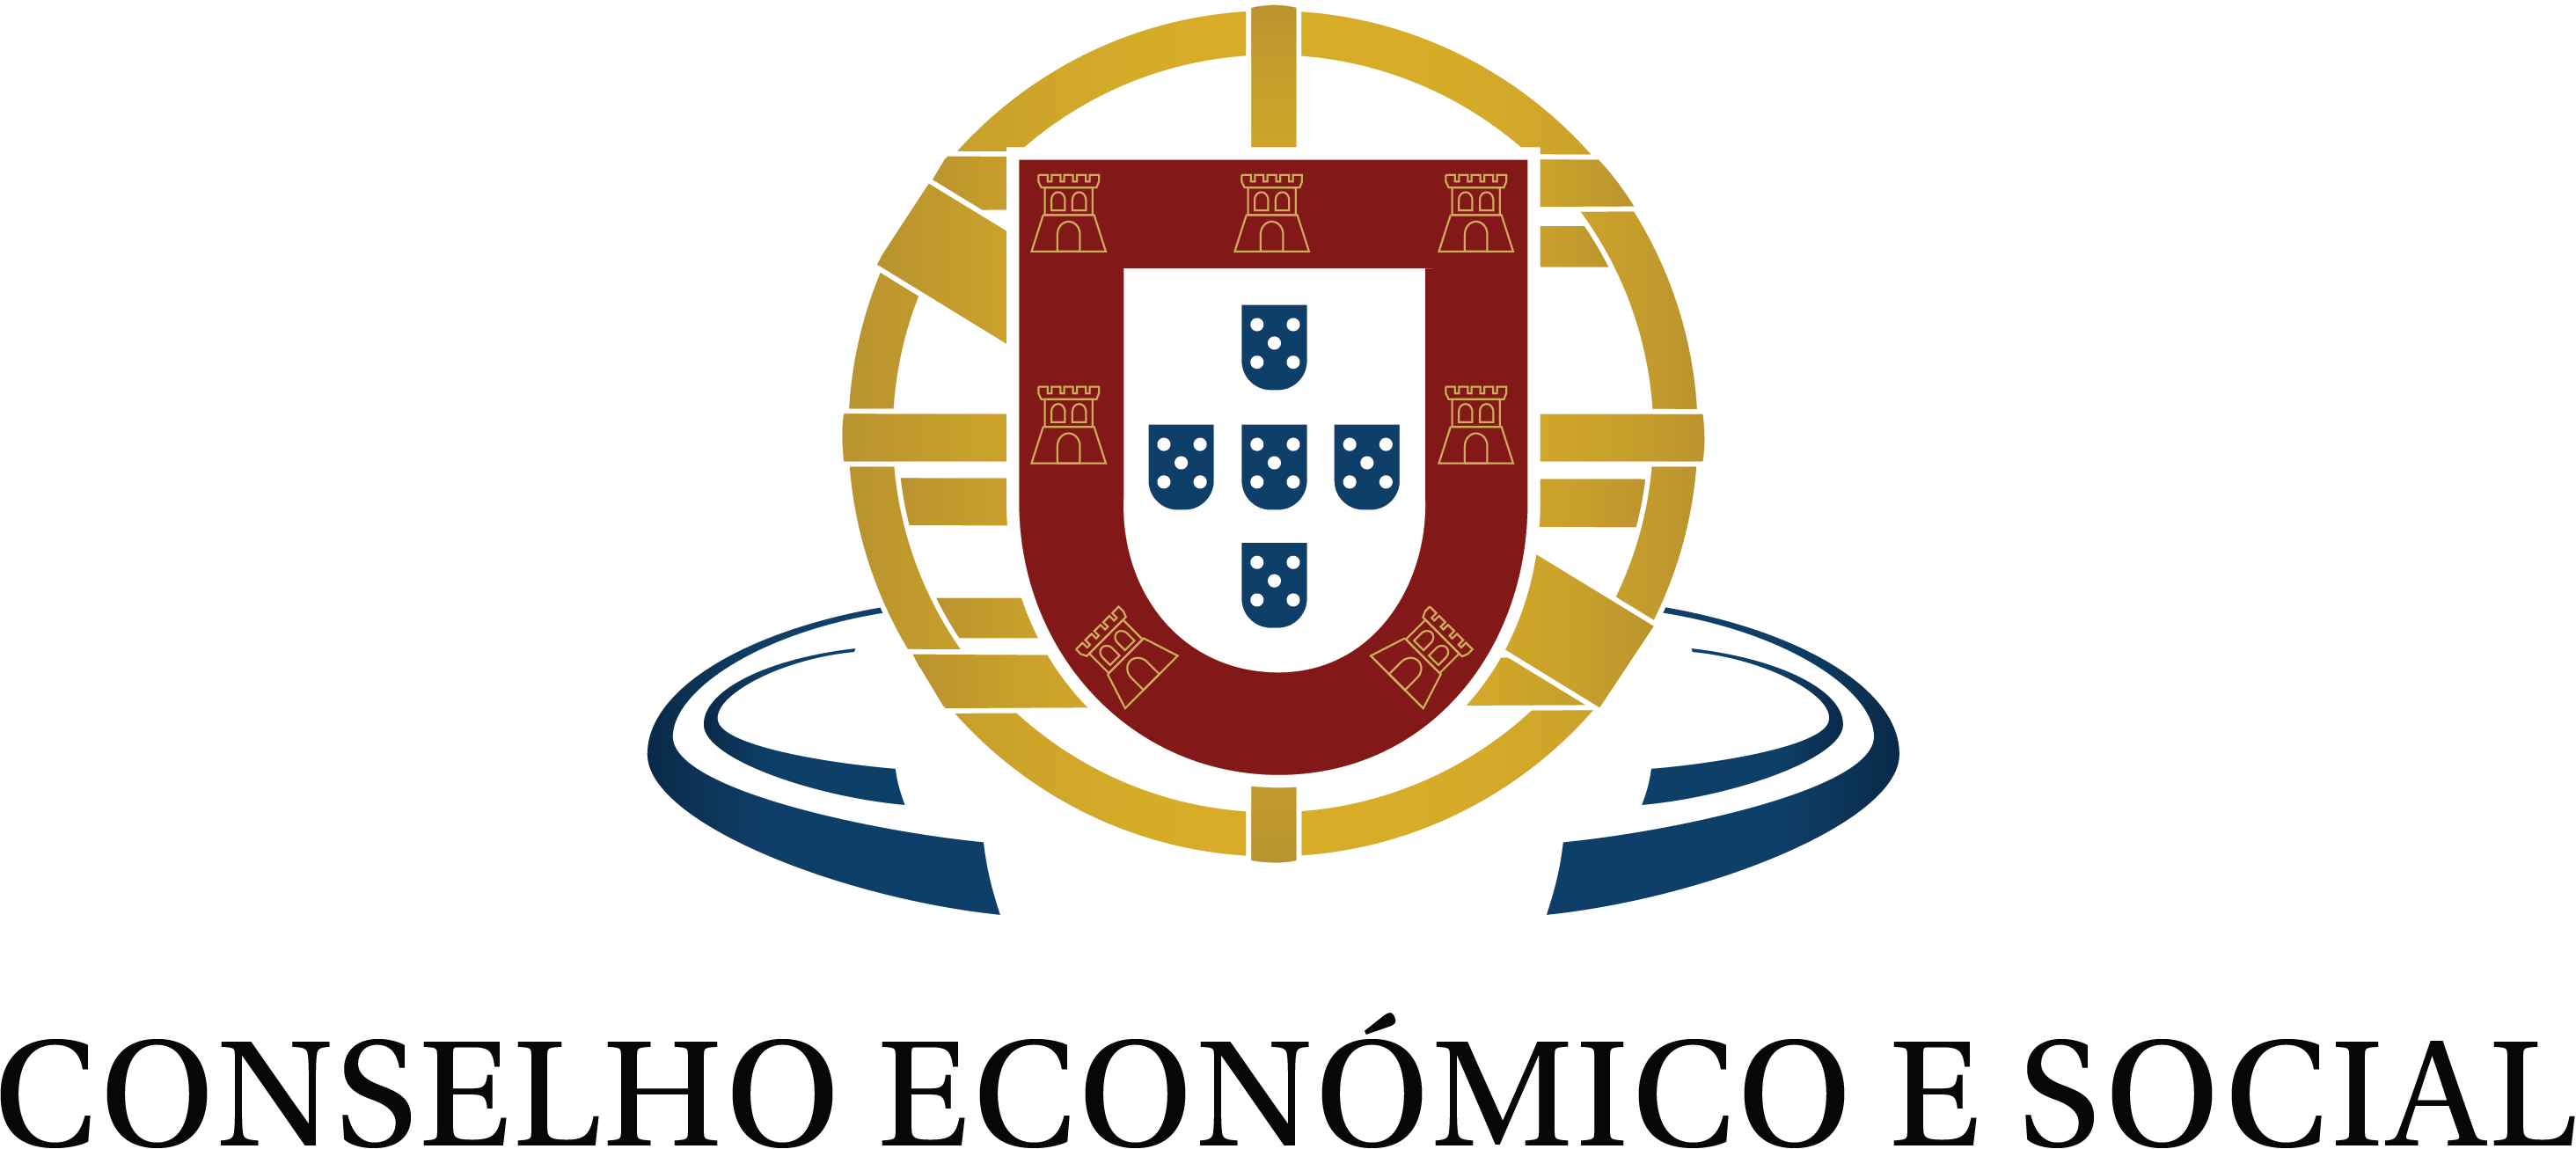 Conselho Económico e Social Portugal